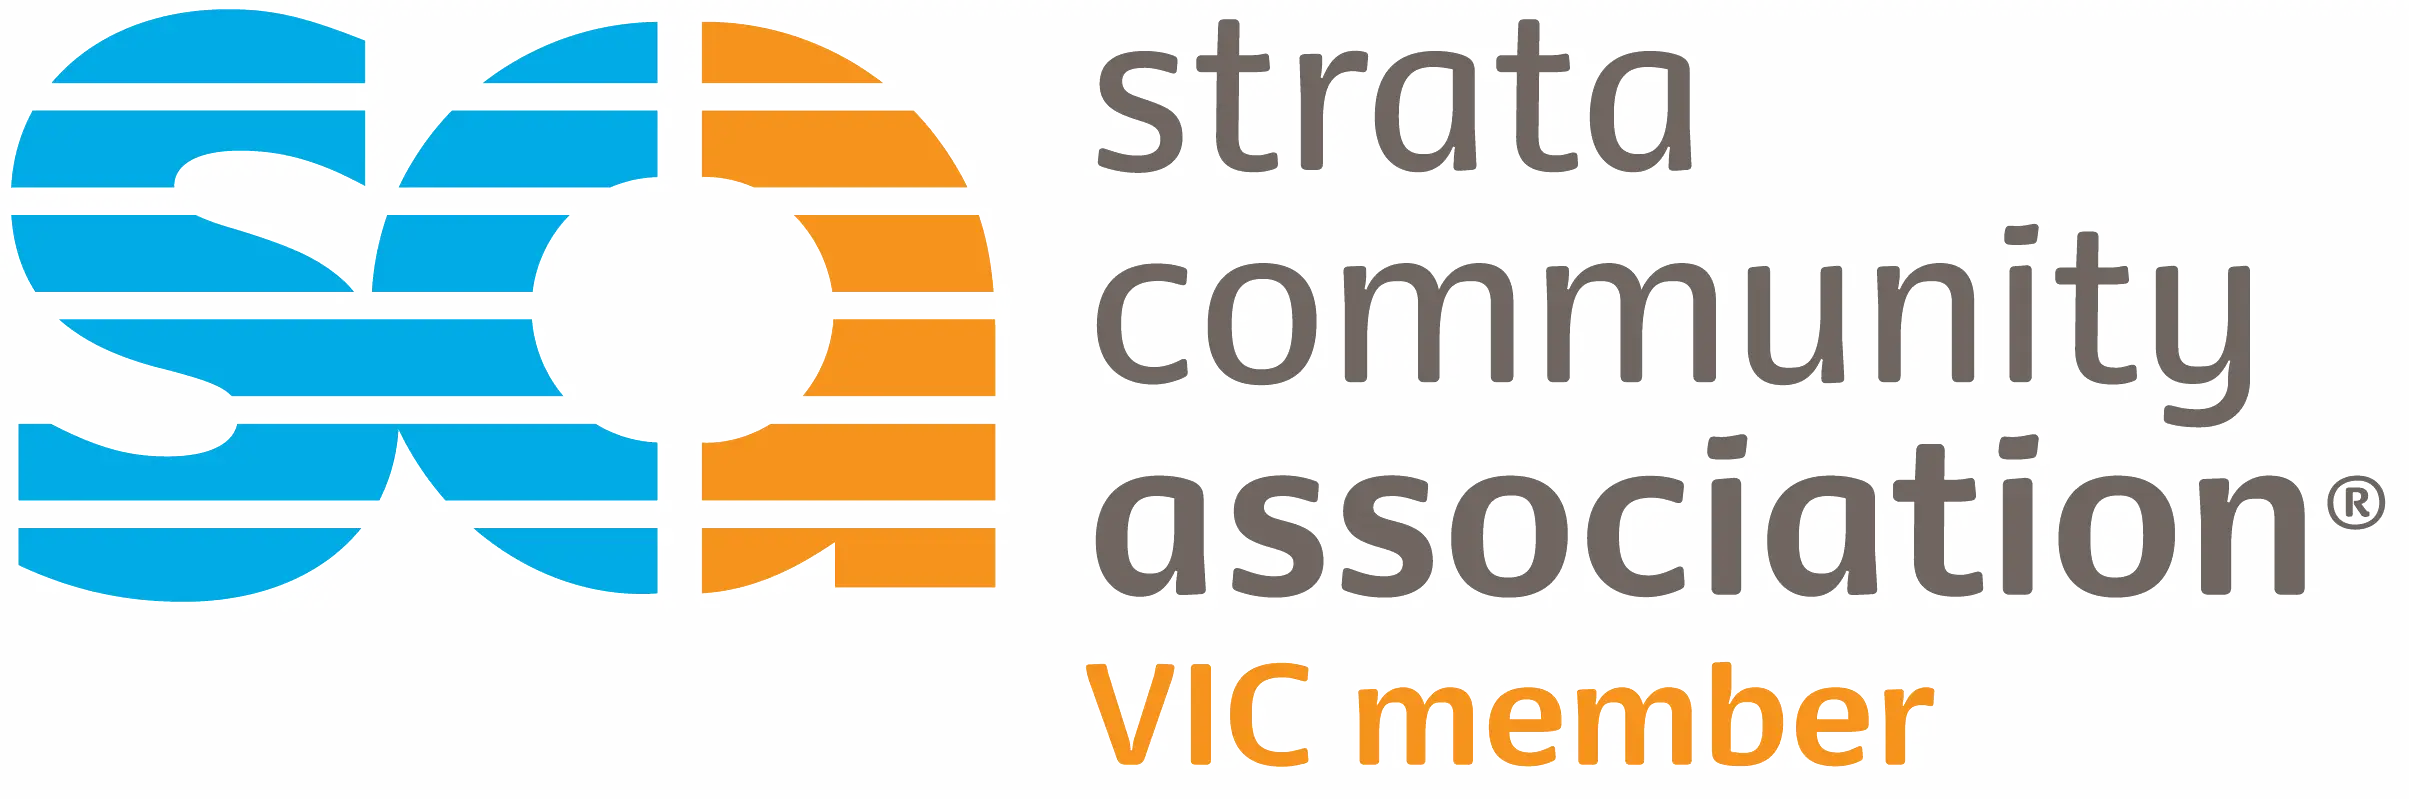 Strata-Community-Association logo